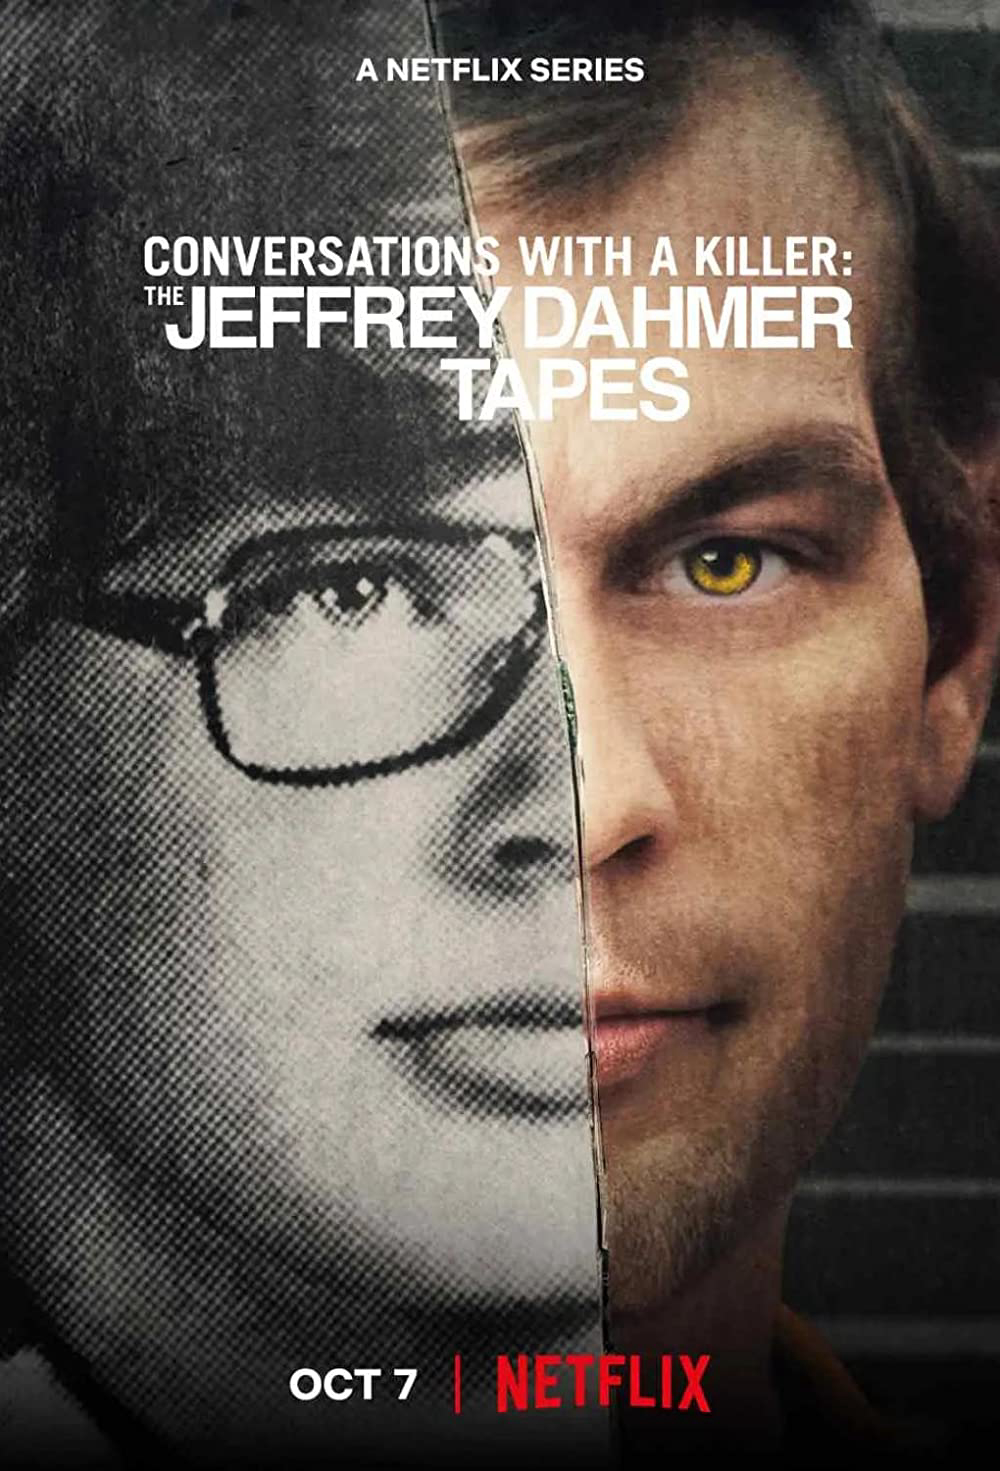 Poster Phim Đối thoại với kẻ sát nhân: Jeffrey Dahmer (Conversations with a Killer: The Jeffrey Dahmer Tapes)